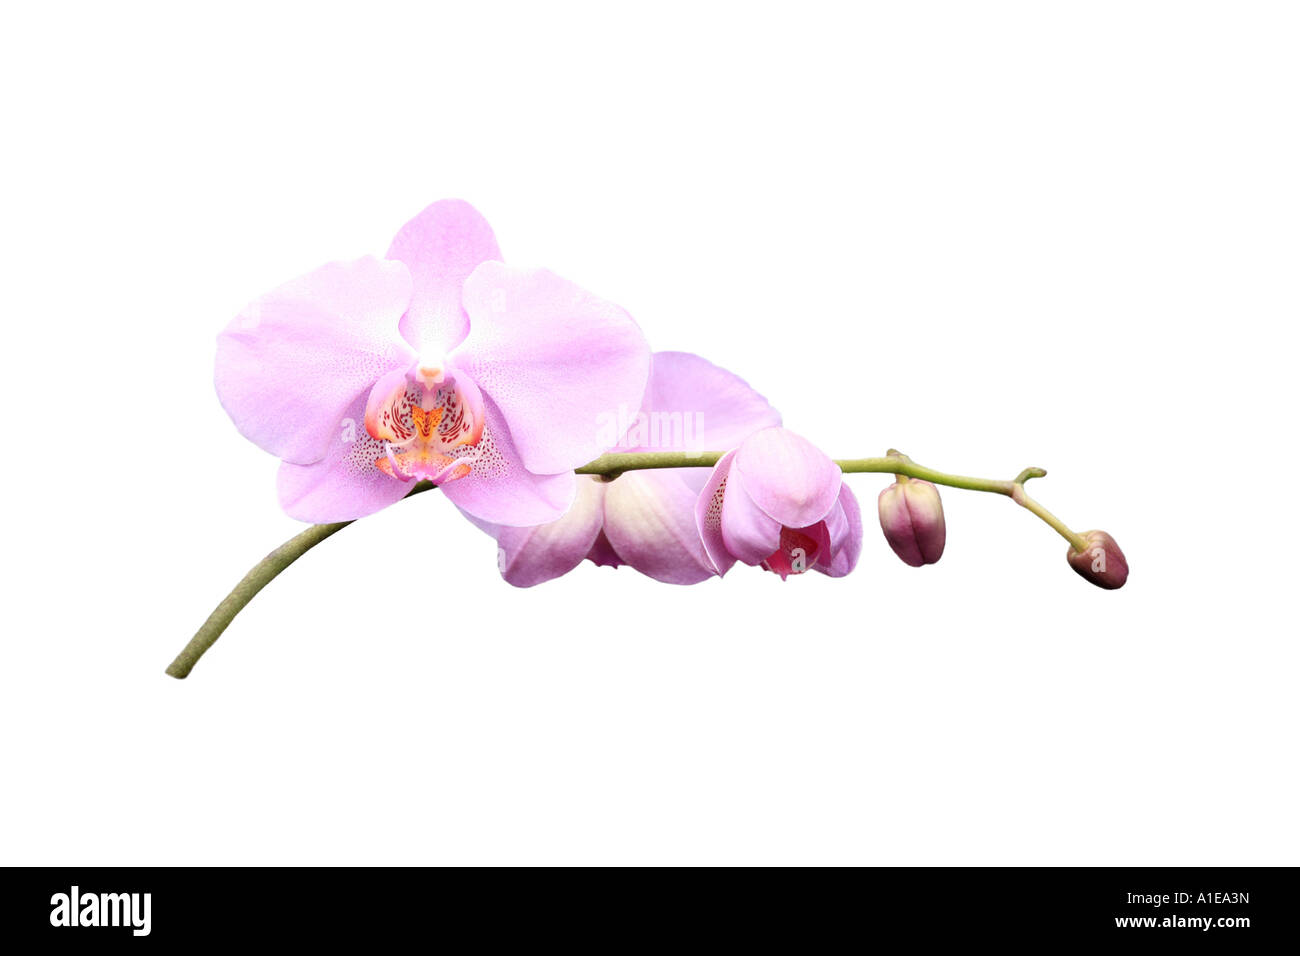 Moth orchid (Phalaenopsis ibrido), ordine di sviluppo dei Fiori, Foto serie 4/9 Foto Stock